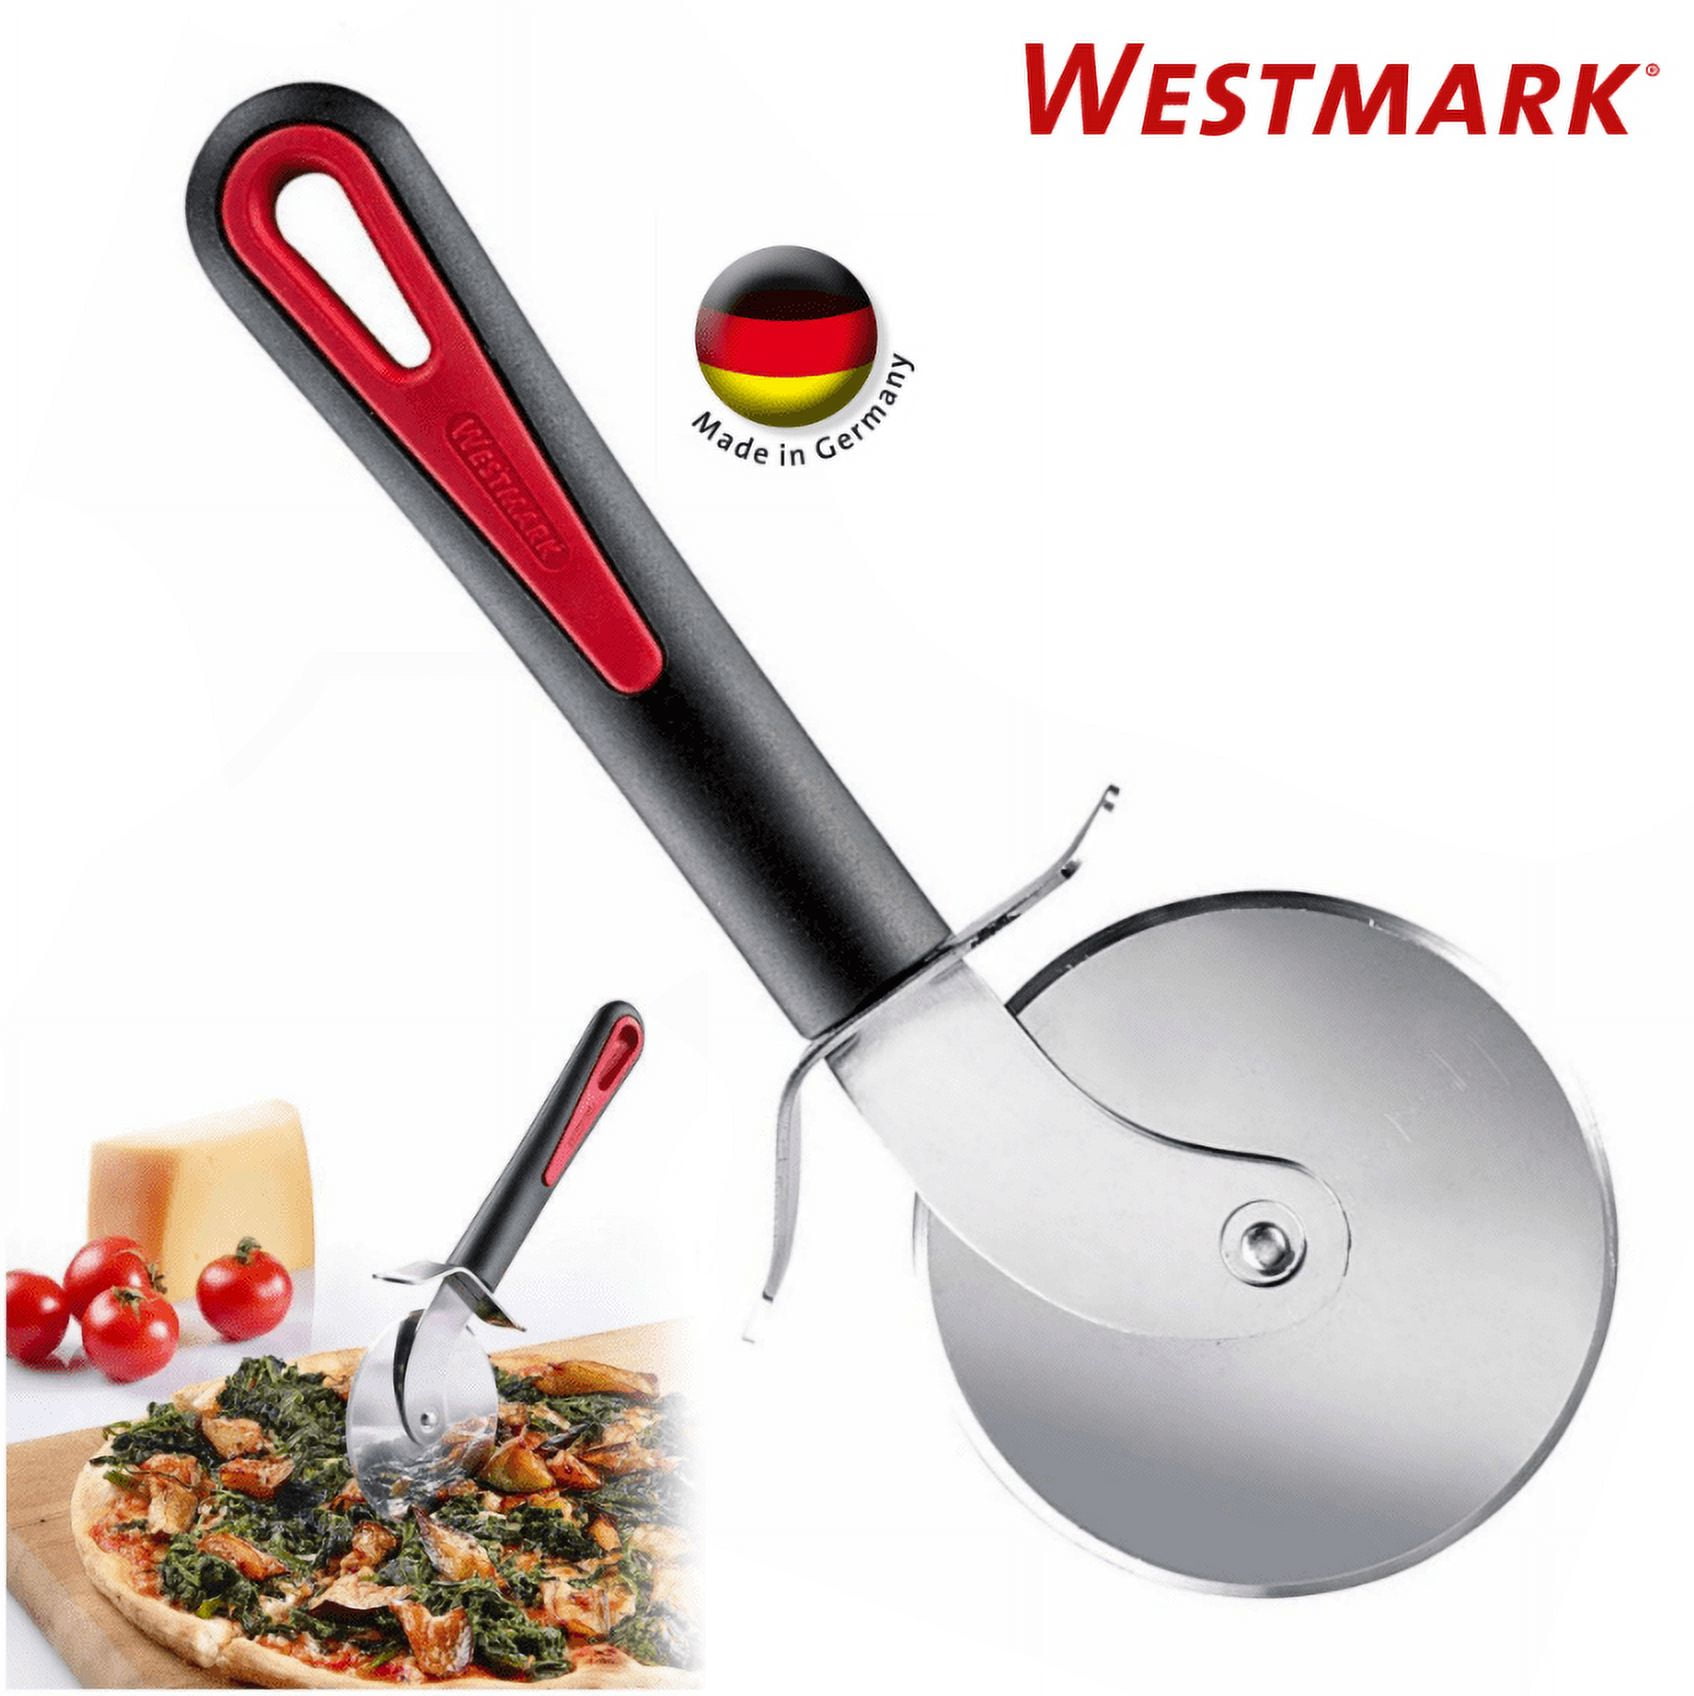 Westmark German Heavy Duty Stainless Steel Pizza Cutter Slicer Wheel 3 inch  Red | Pizzaschneider